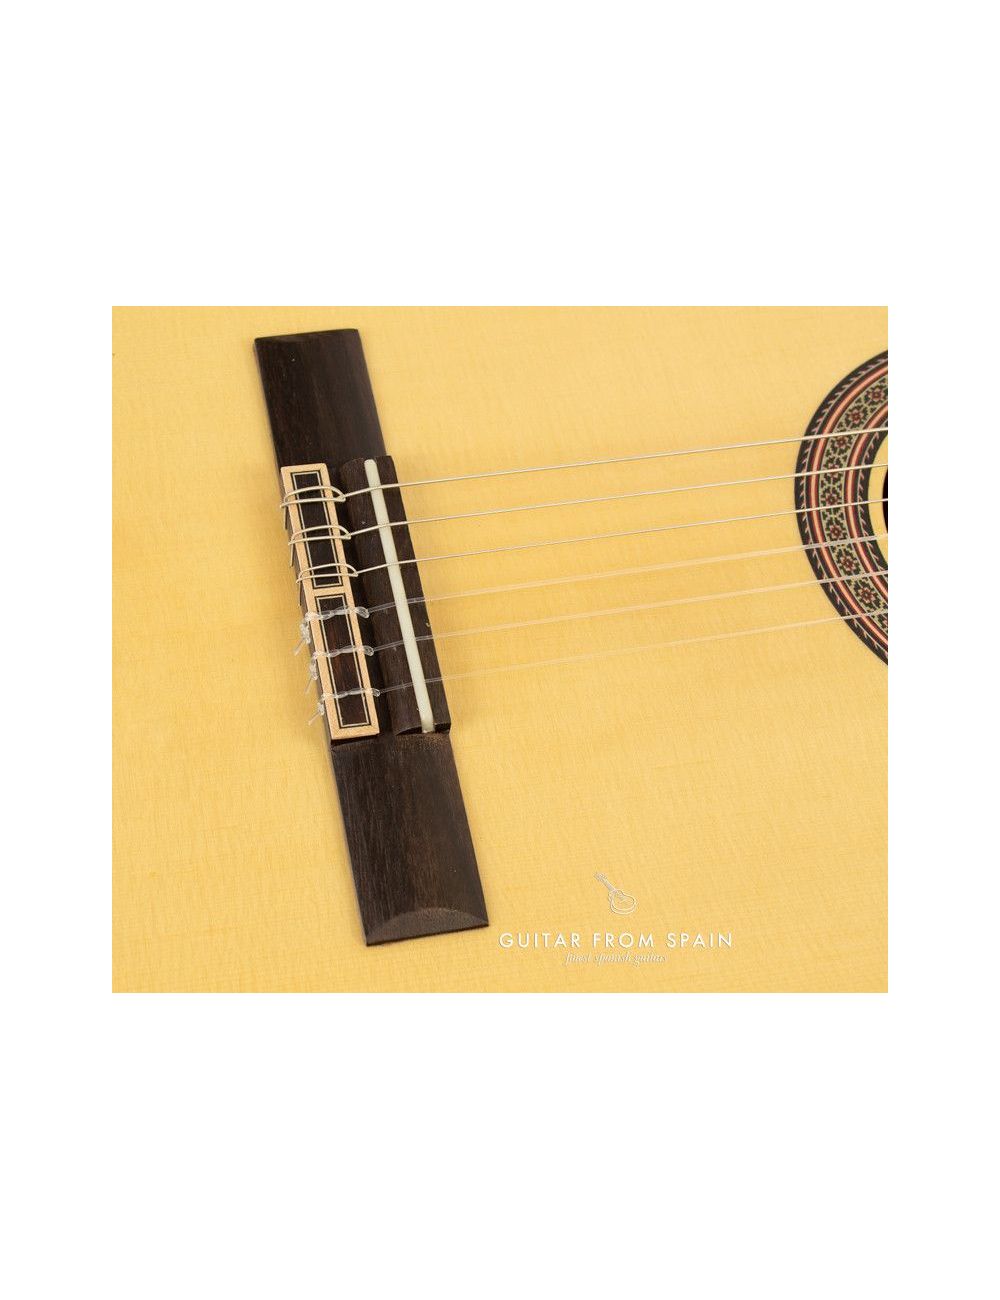 Admira A45 S Classical guitar ADM45S Classical Studio